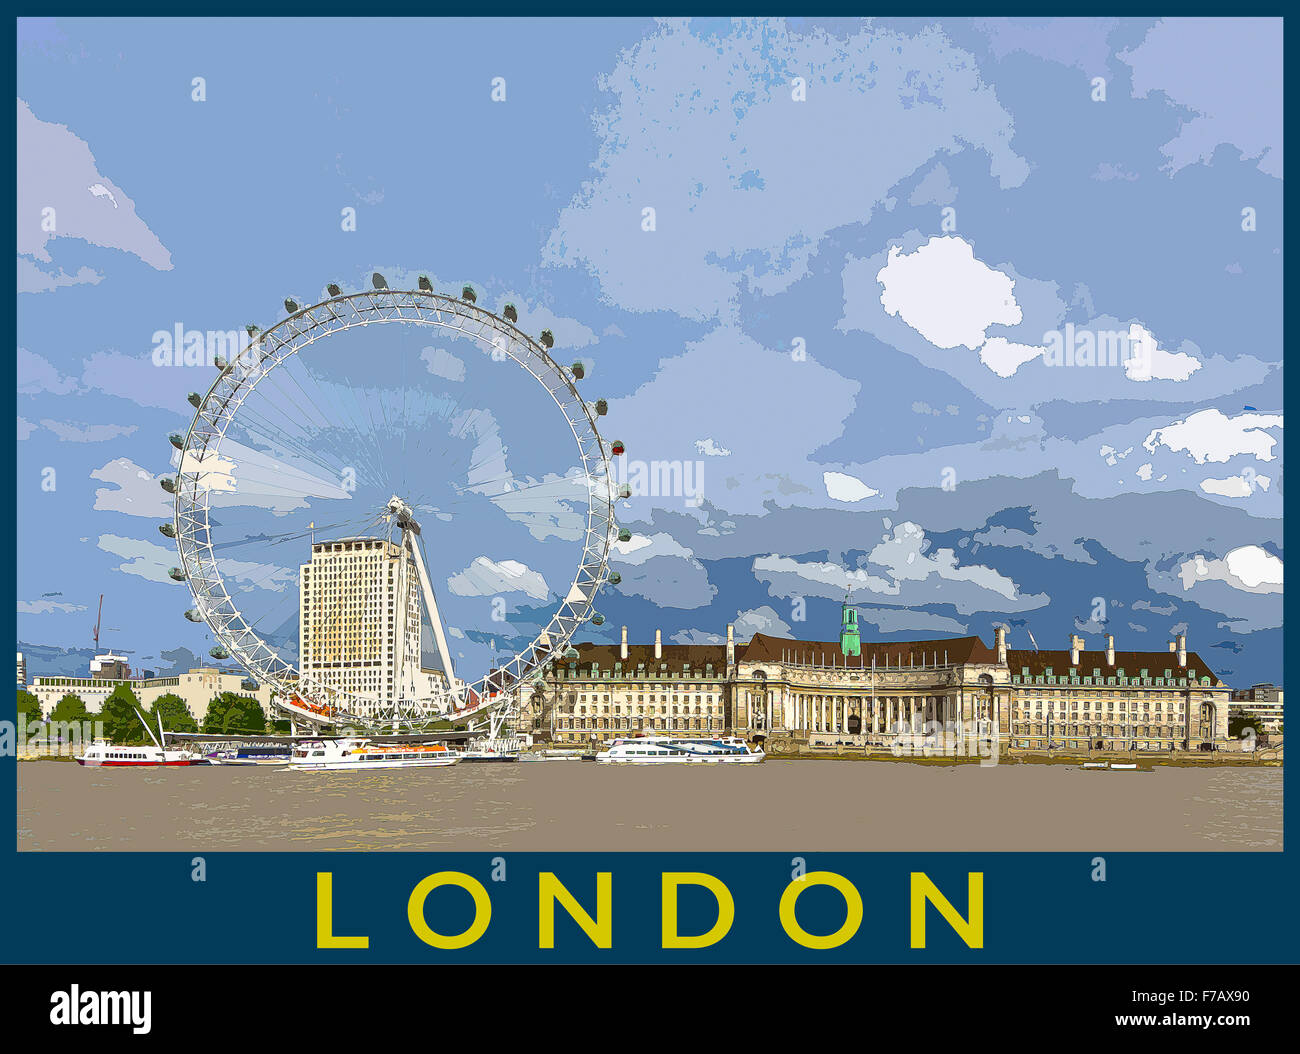 Un style poster illustration à partir d'une photo de la rive sud et London Eye de la Tamise, Londres, Angleterre, Royaume-Uni Banque D'Images